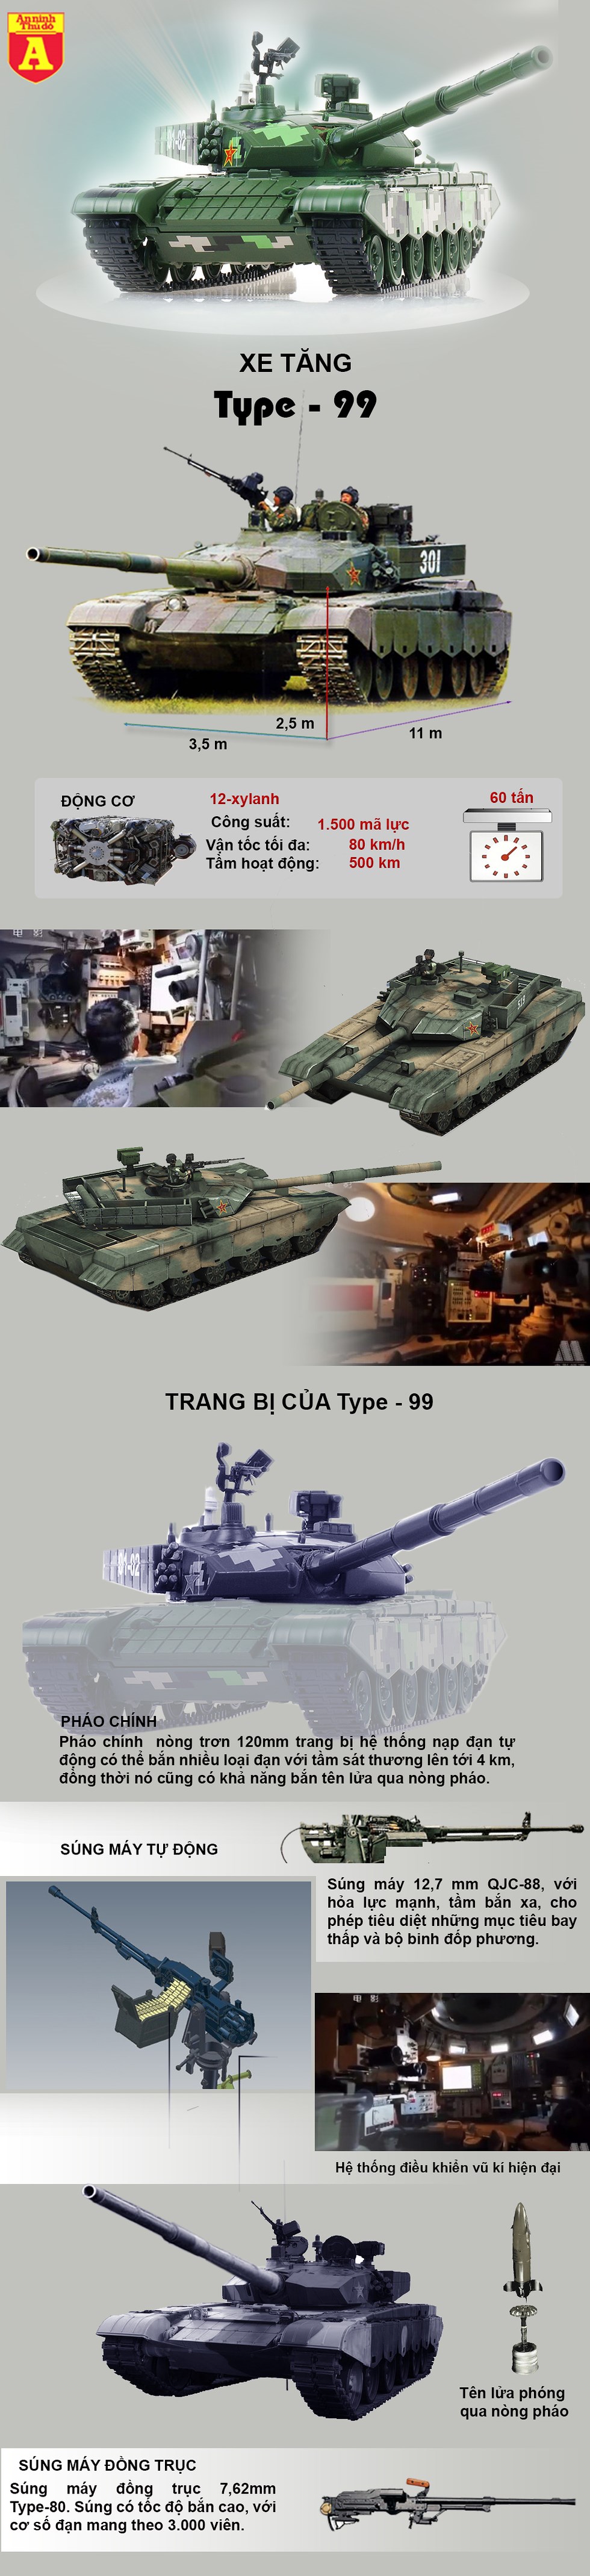 [Infographics] Siêu tăng Type 99 của Trung Quốc chỉ là hổ giấy và sự thừa nhận cay đắng? - Ảnh 1